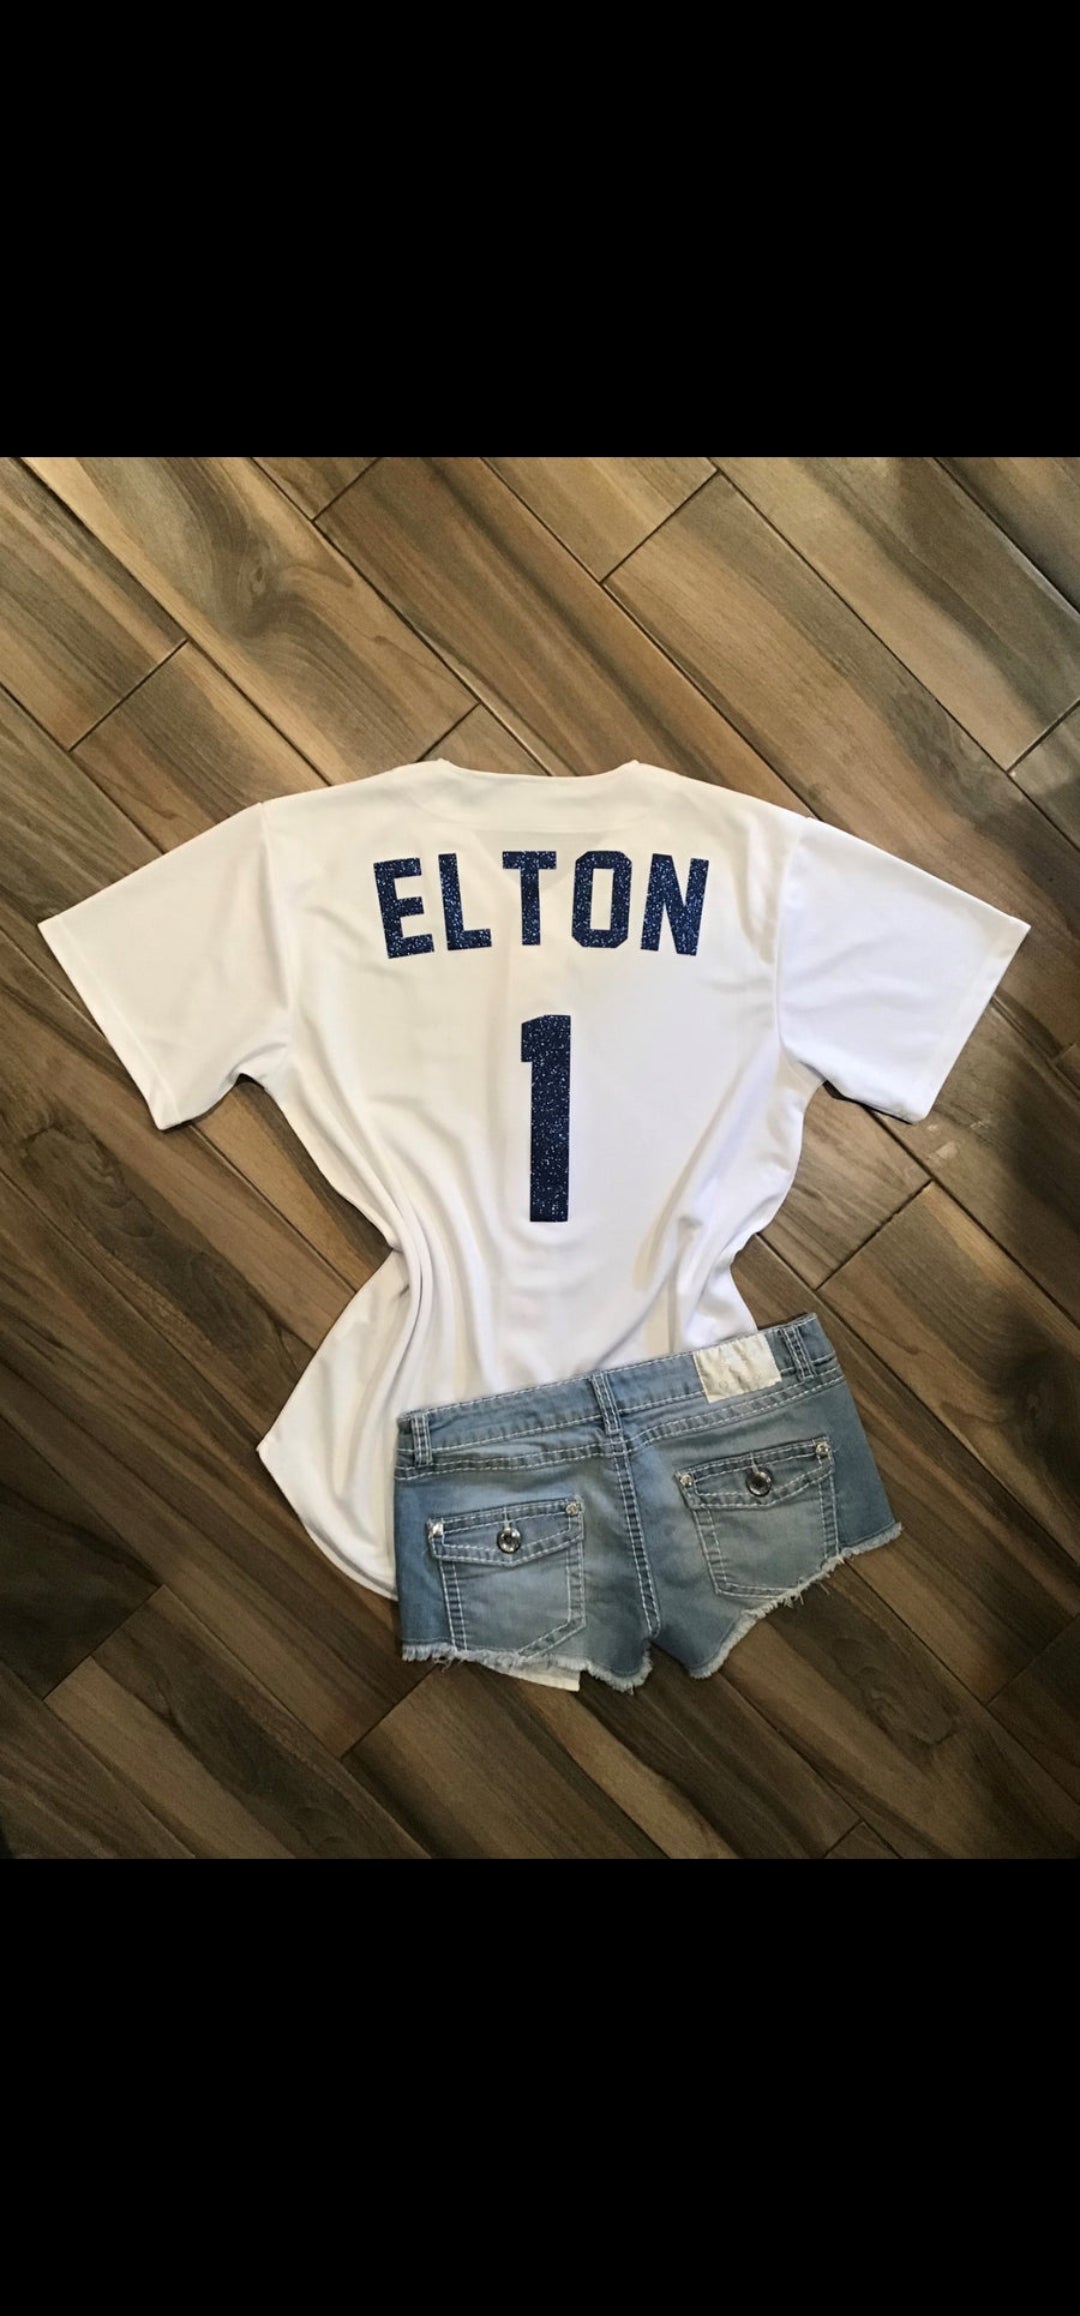 Lulu Grace Designs La Dodgers Inspired Elton John Style Baseball Jersey (Blue) L / Ladies Muscle Tank